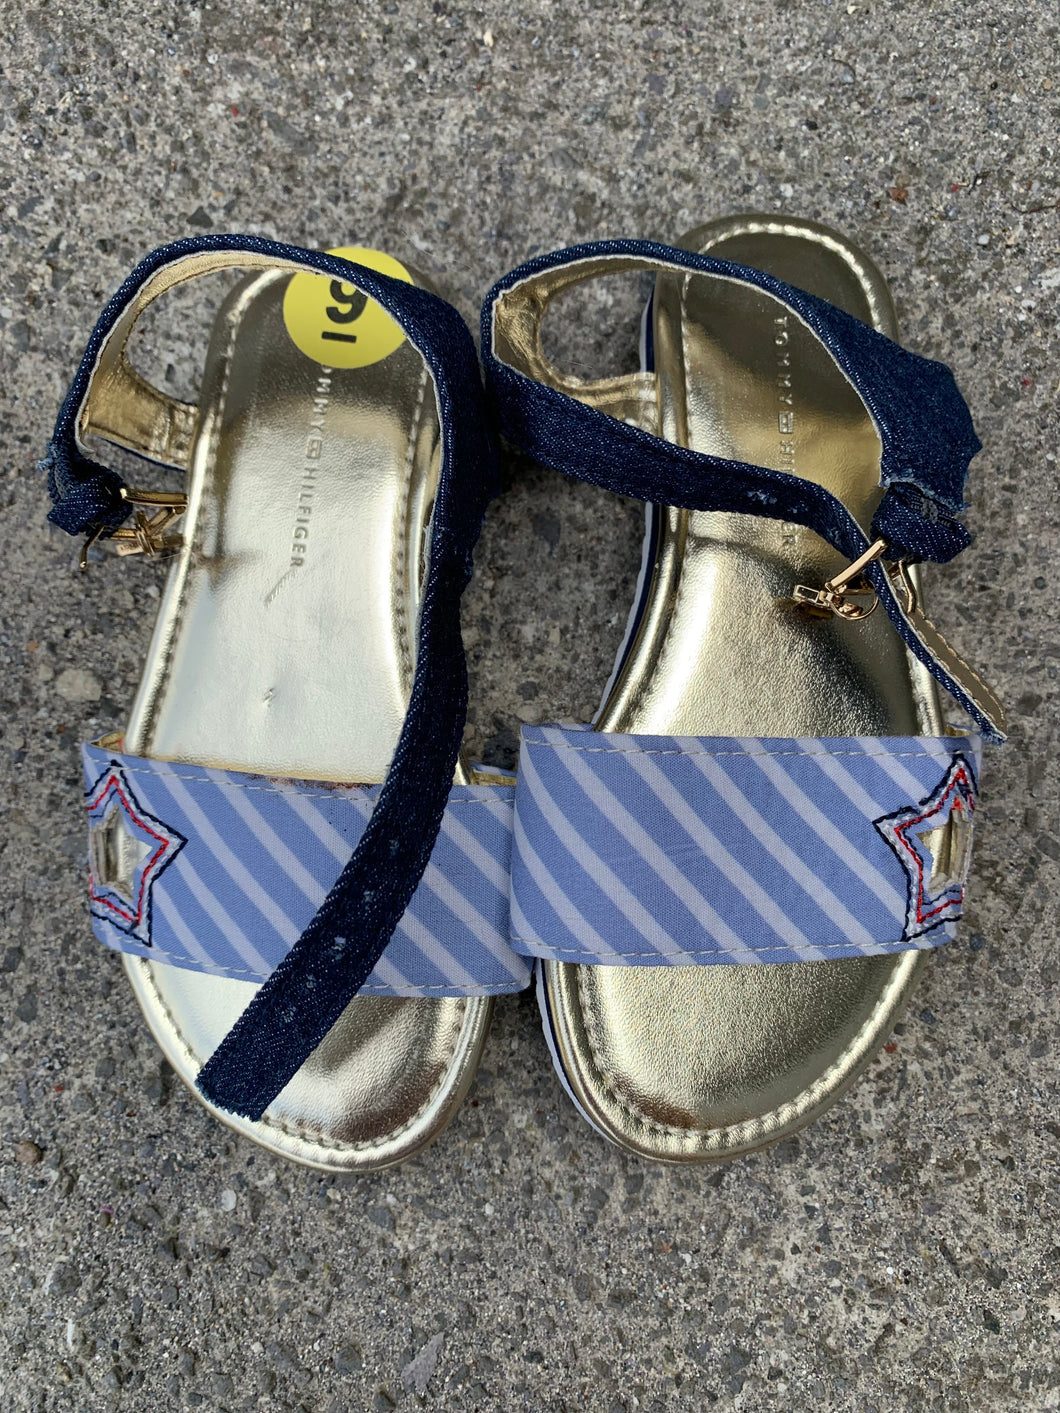 Star sandals  uk 8.5 (eu 26)